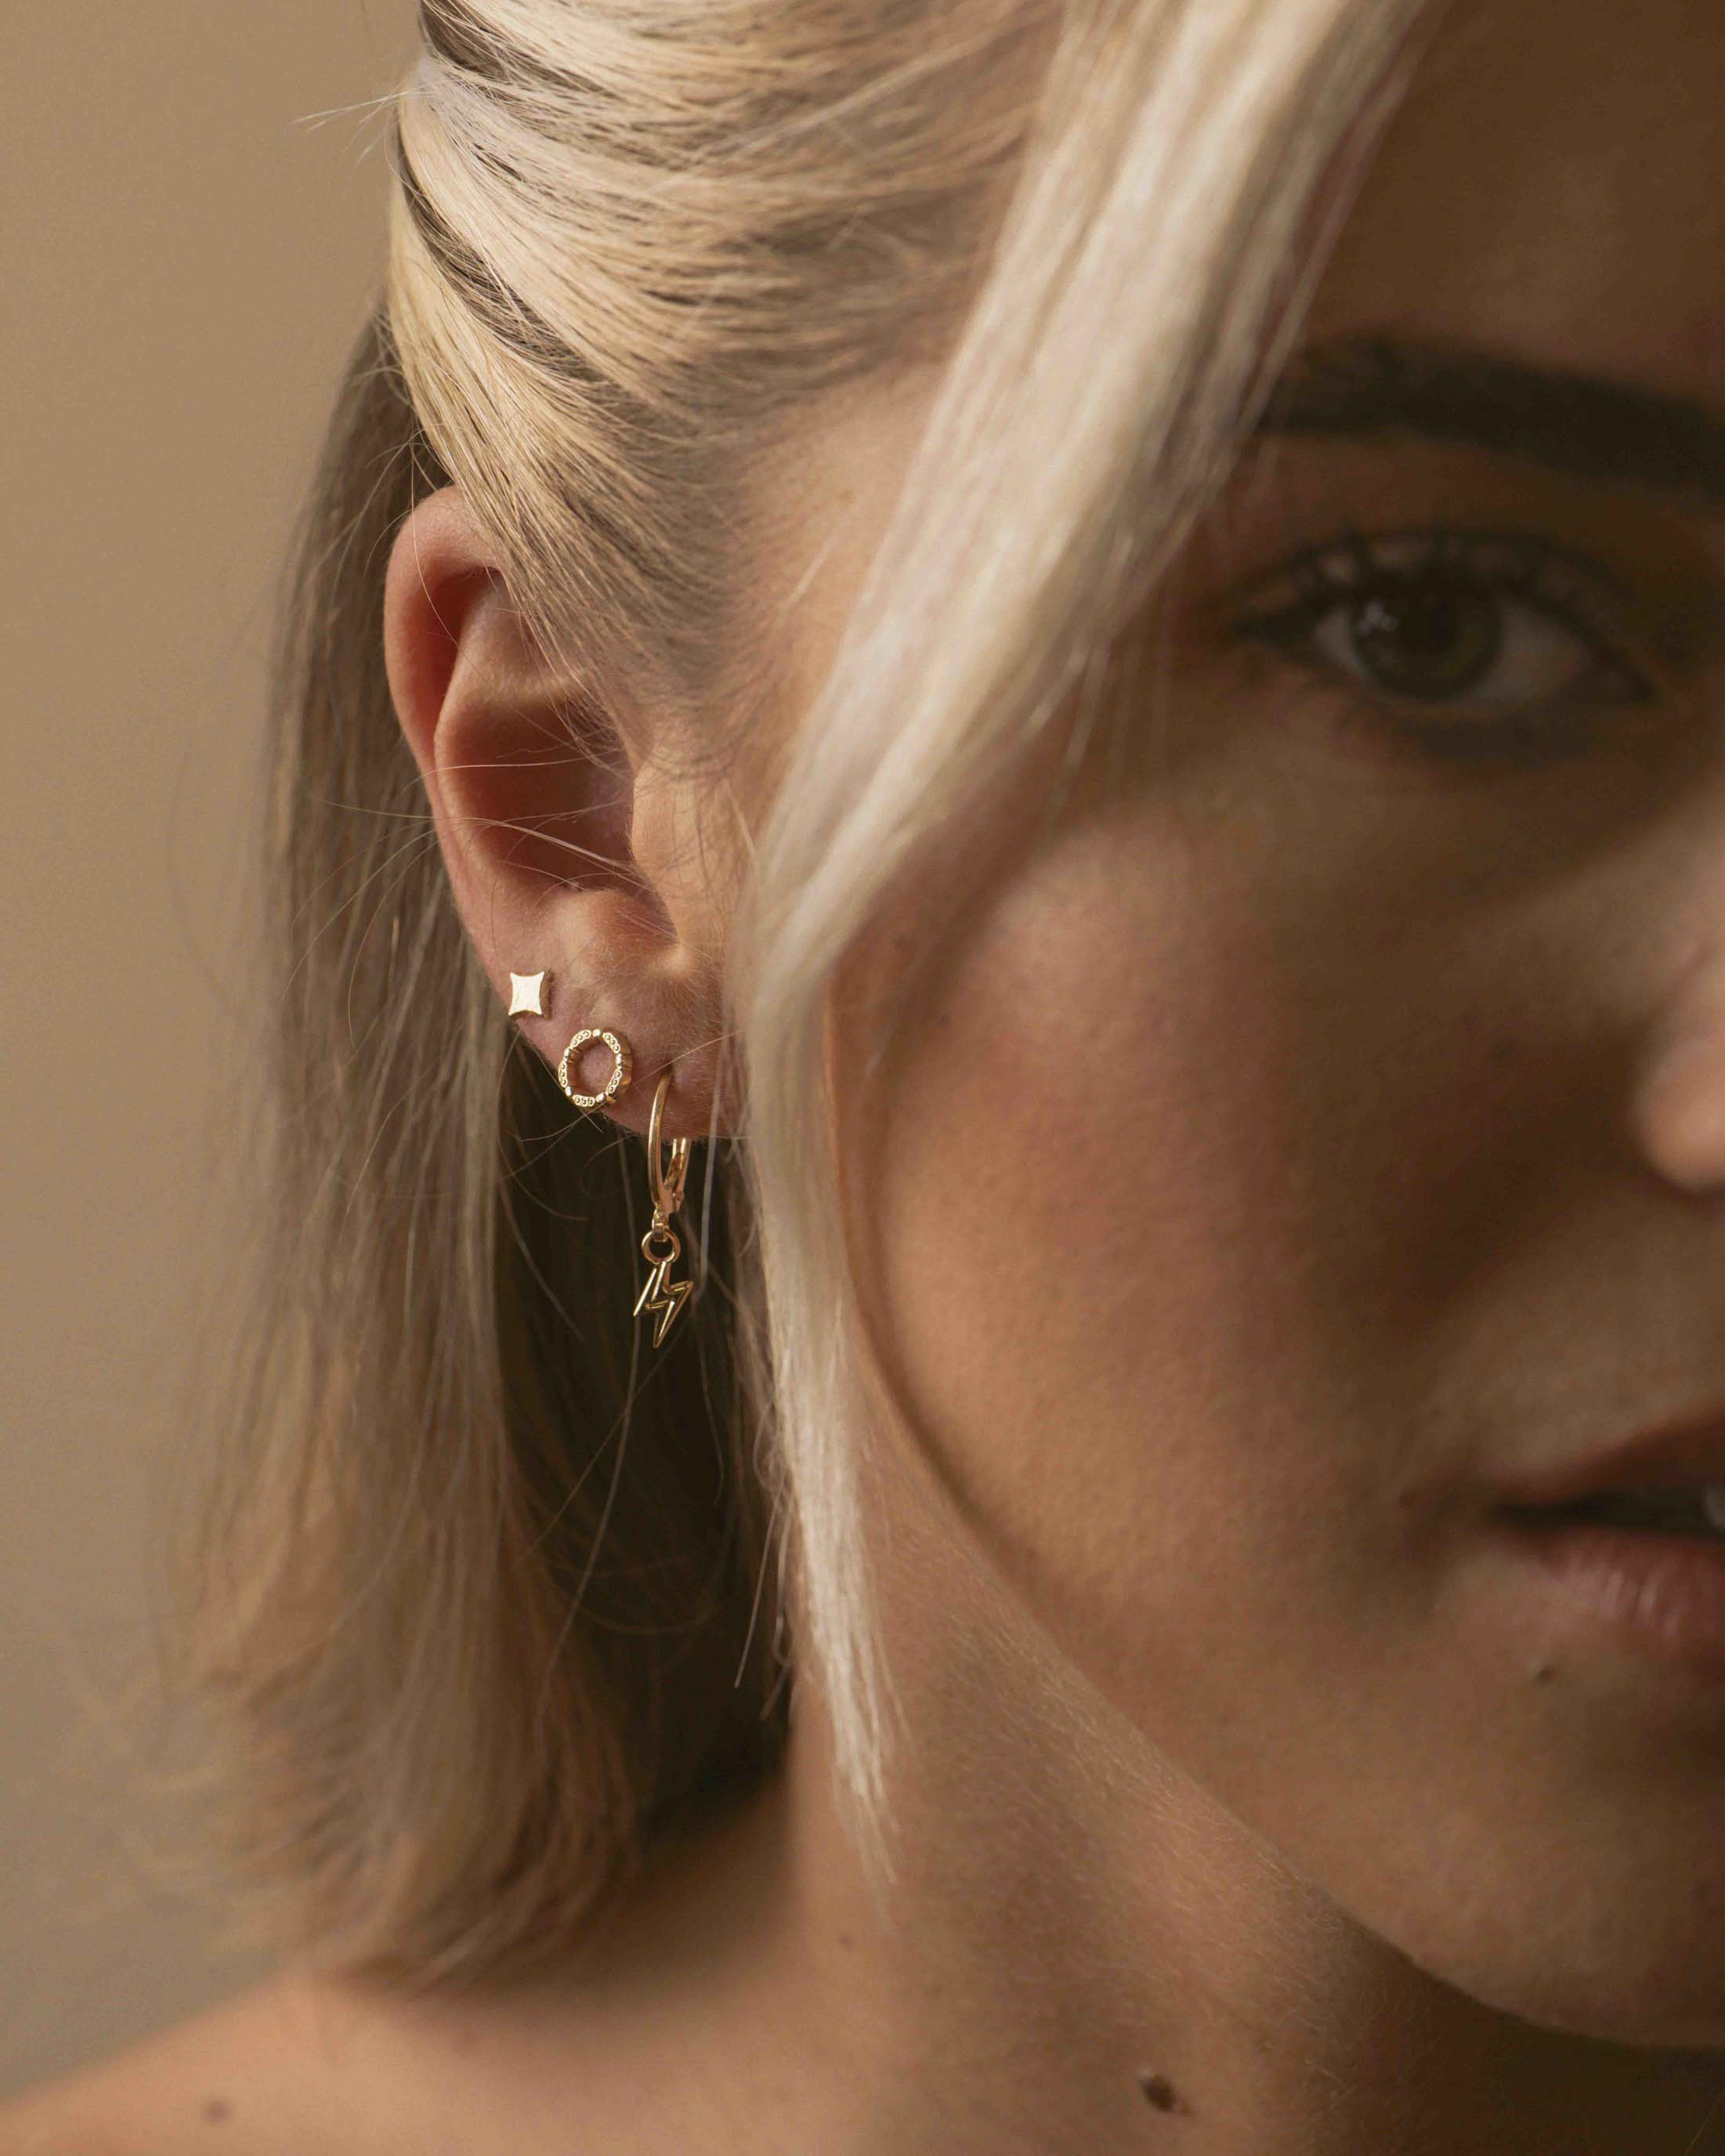 Boucles d'oreilles anneaux pour femme - Argent sterling. Color